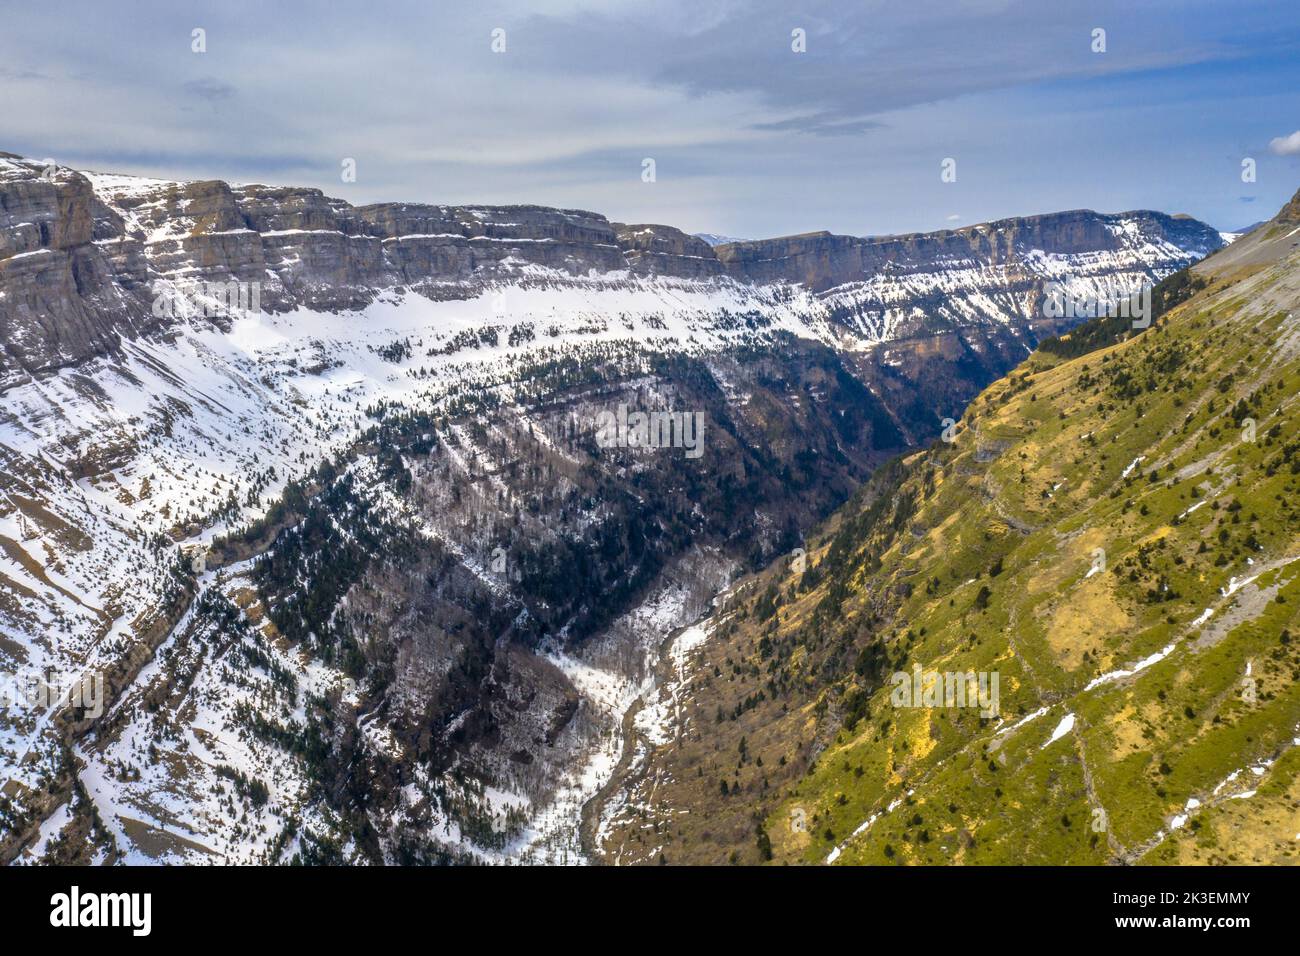 Vue aérienne du célèbre Canyon d'Ordesa dans les Pyrénées espagnoles. Huesca, Aragon, Espagne. Banque D'Images